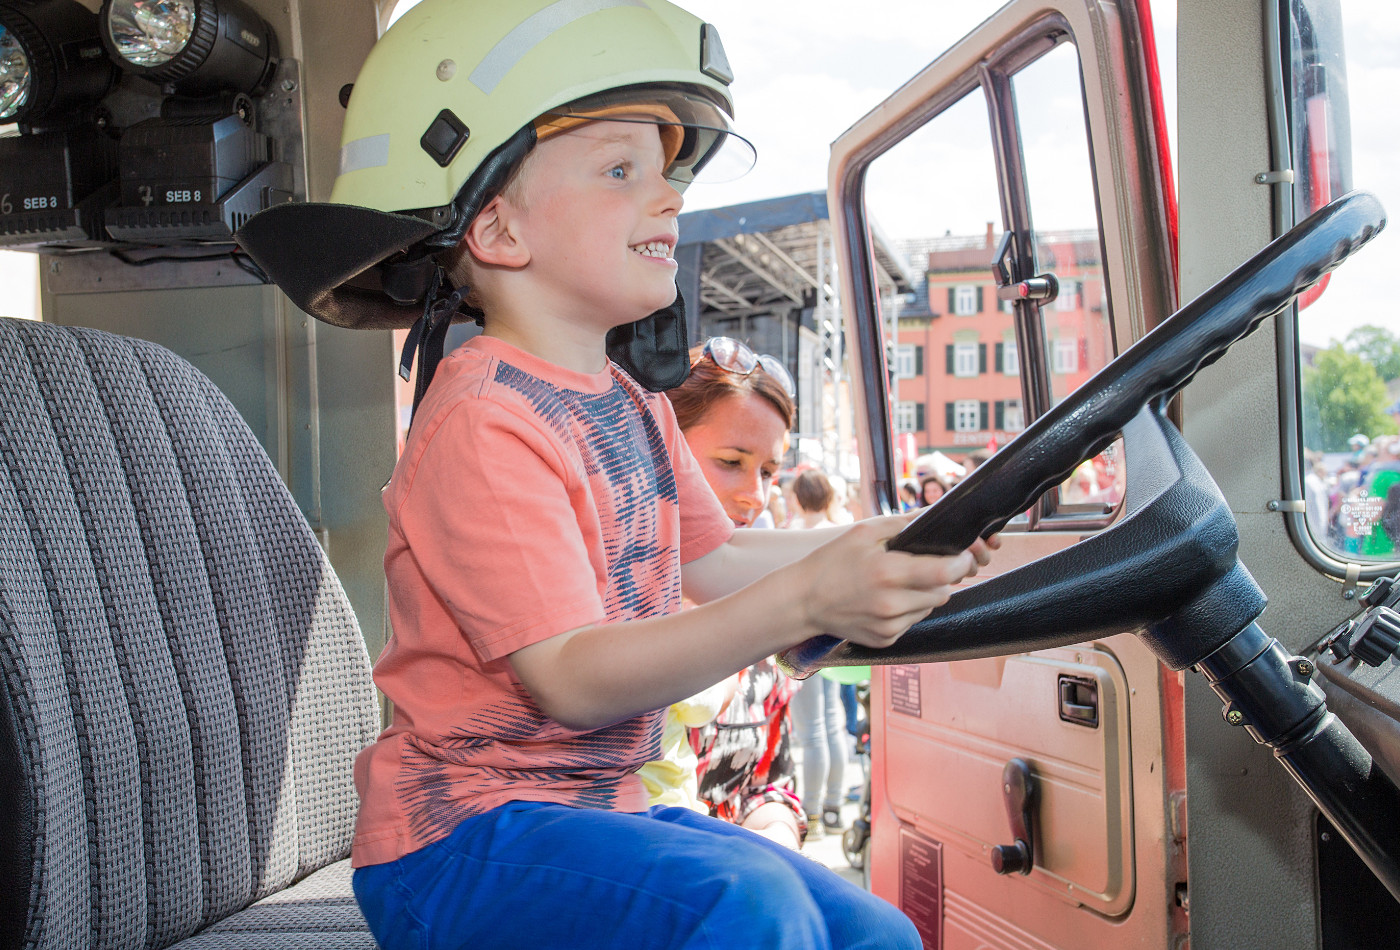 Ein Kind sitzt grinsend am Steuer eines Feuerwehrautos und hat einen Feuerwehrhelm auf